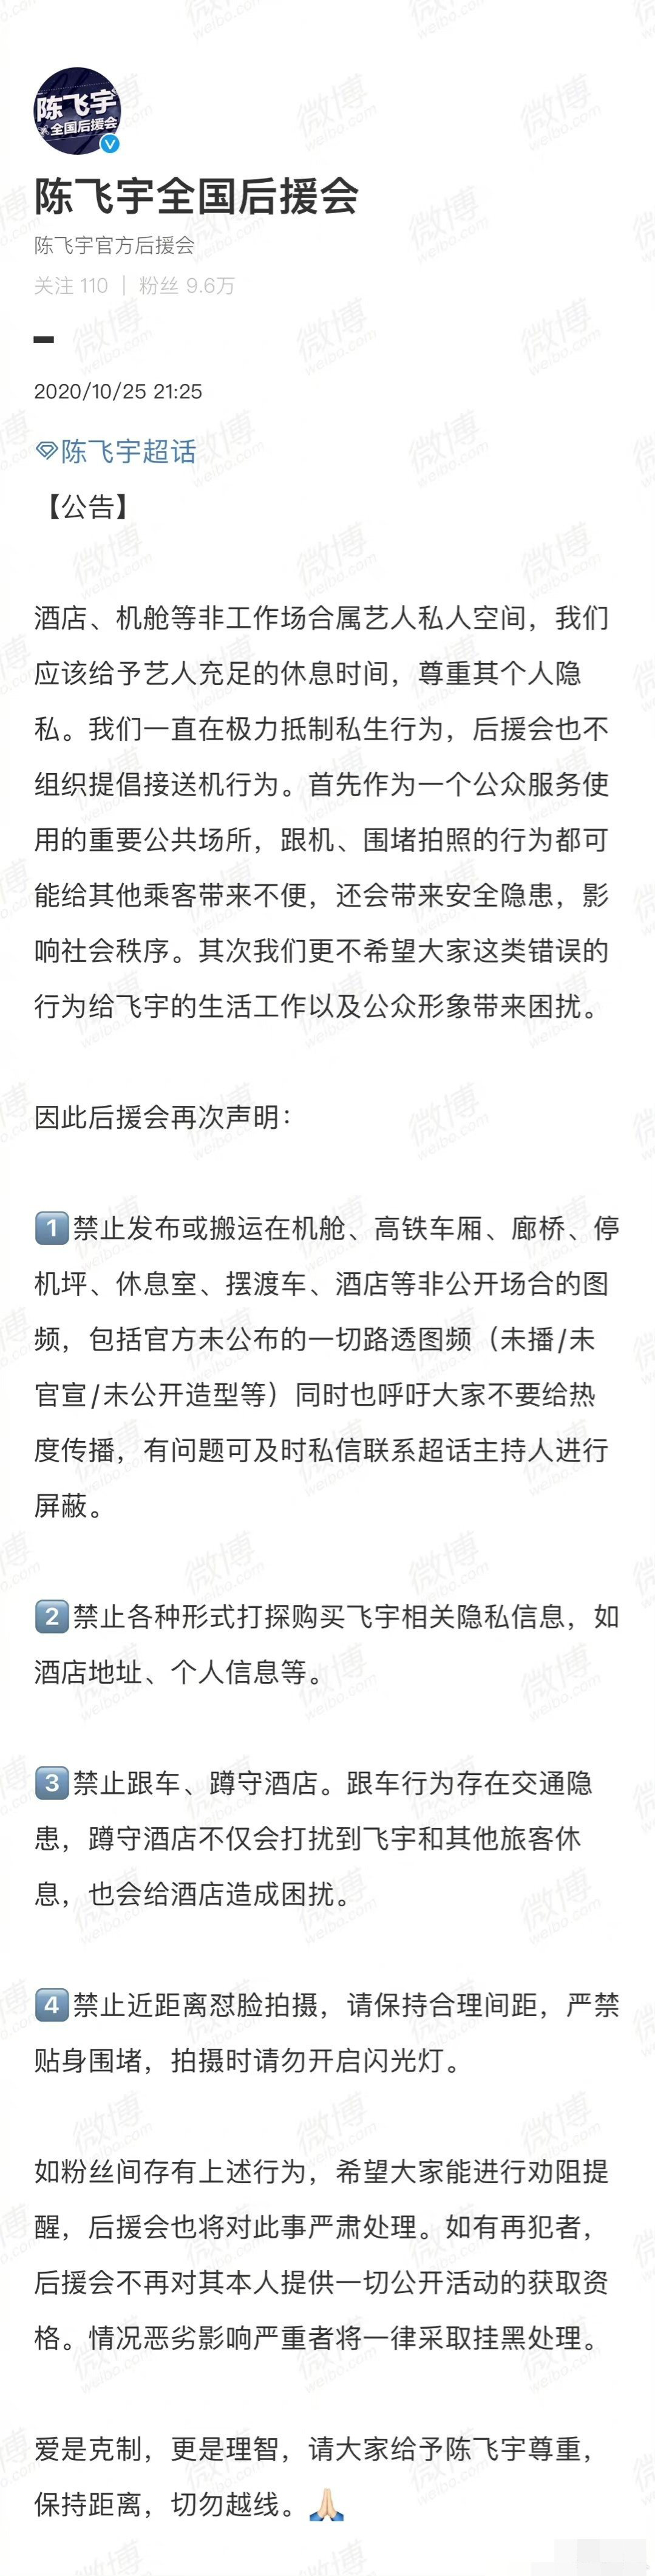 陈飞宇后援会公告抵制私生 呼吁理性追星保持距离